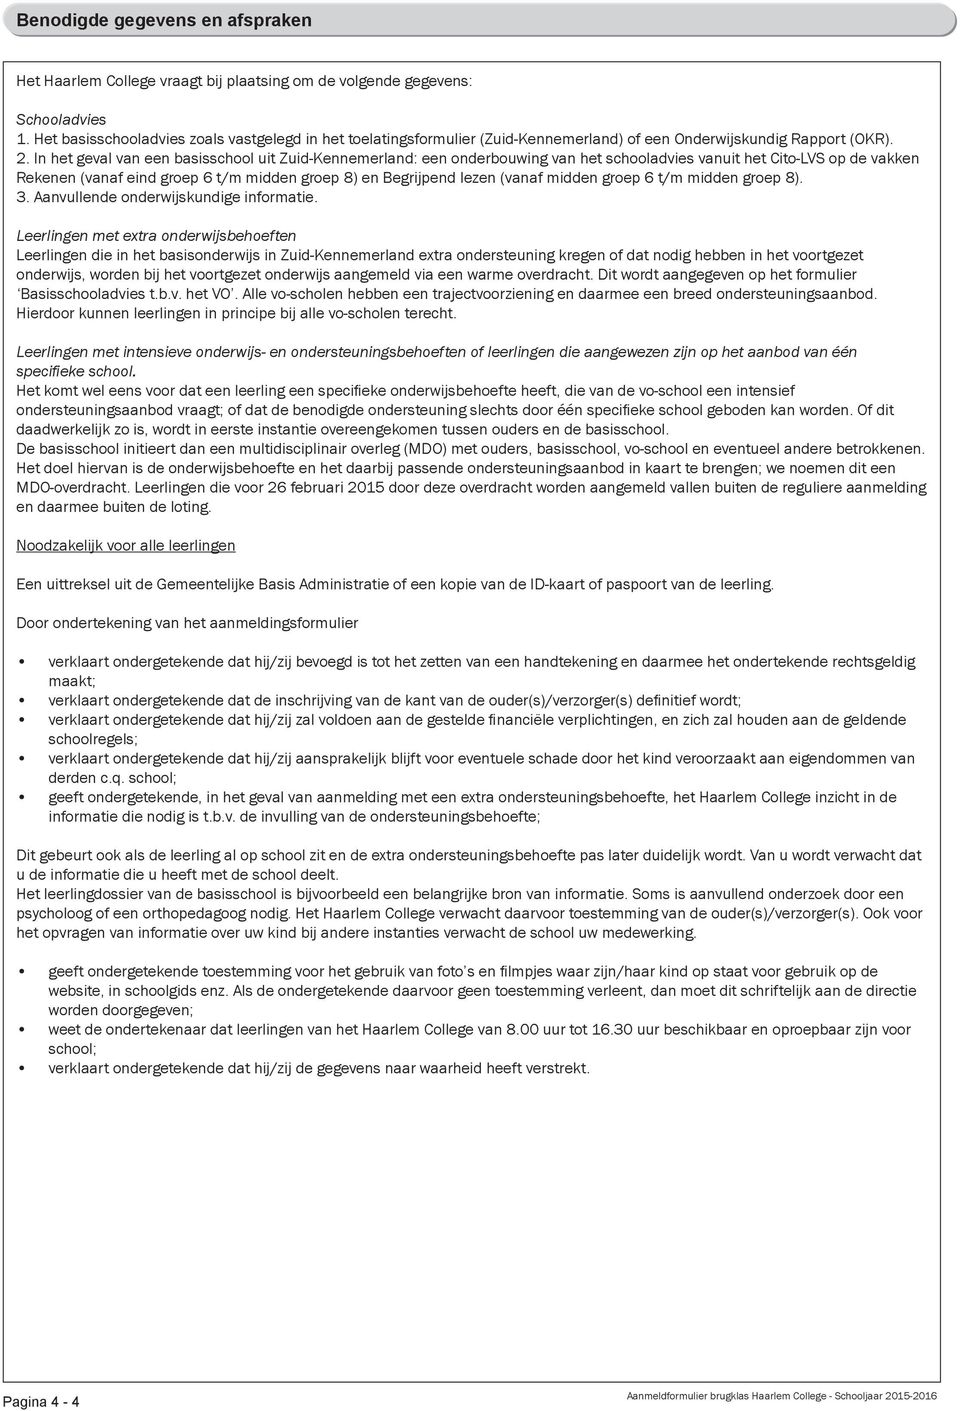 In het geval van een basisschool uit Zuid-Kennemerland: een onderbouwing van het schooladvies vanuit het Cito-LVS op de vakken Rekenen (vanaf eind groep 6 t/m midden groep 8) en Begrijpend lezen